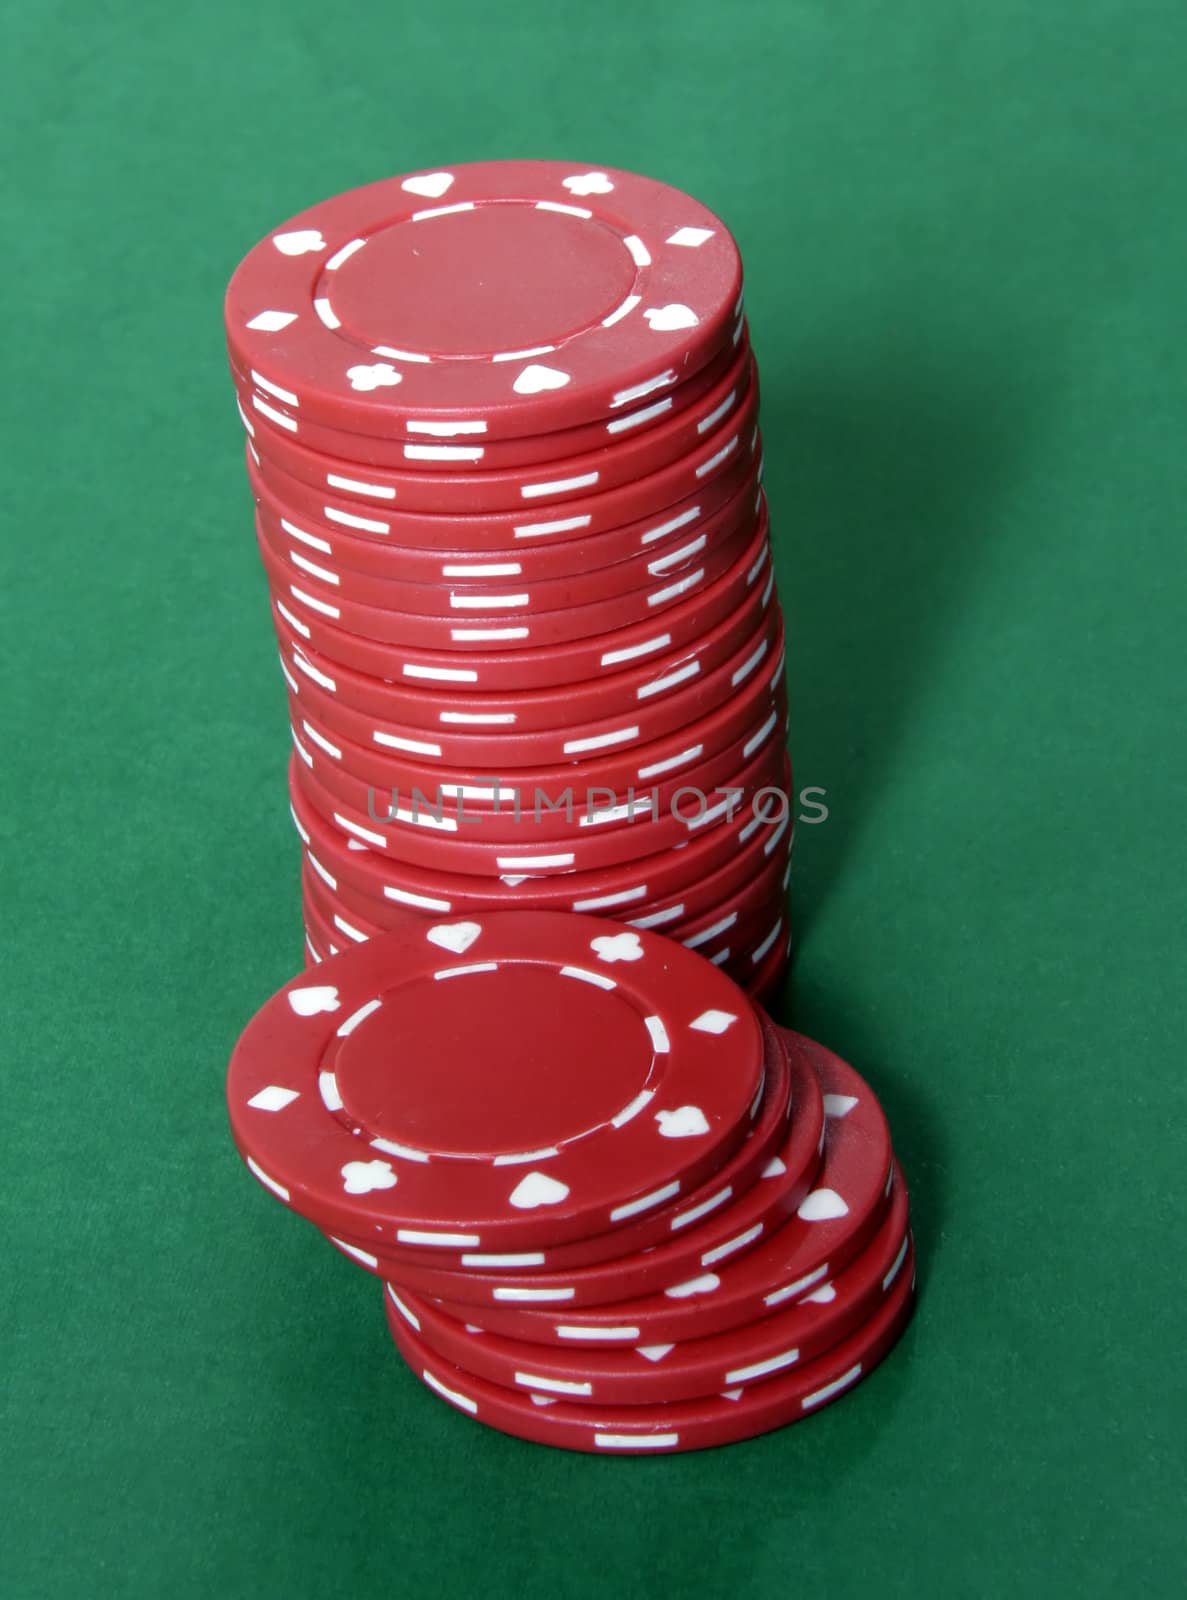 Casino Chips Stacks